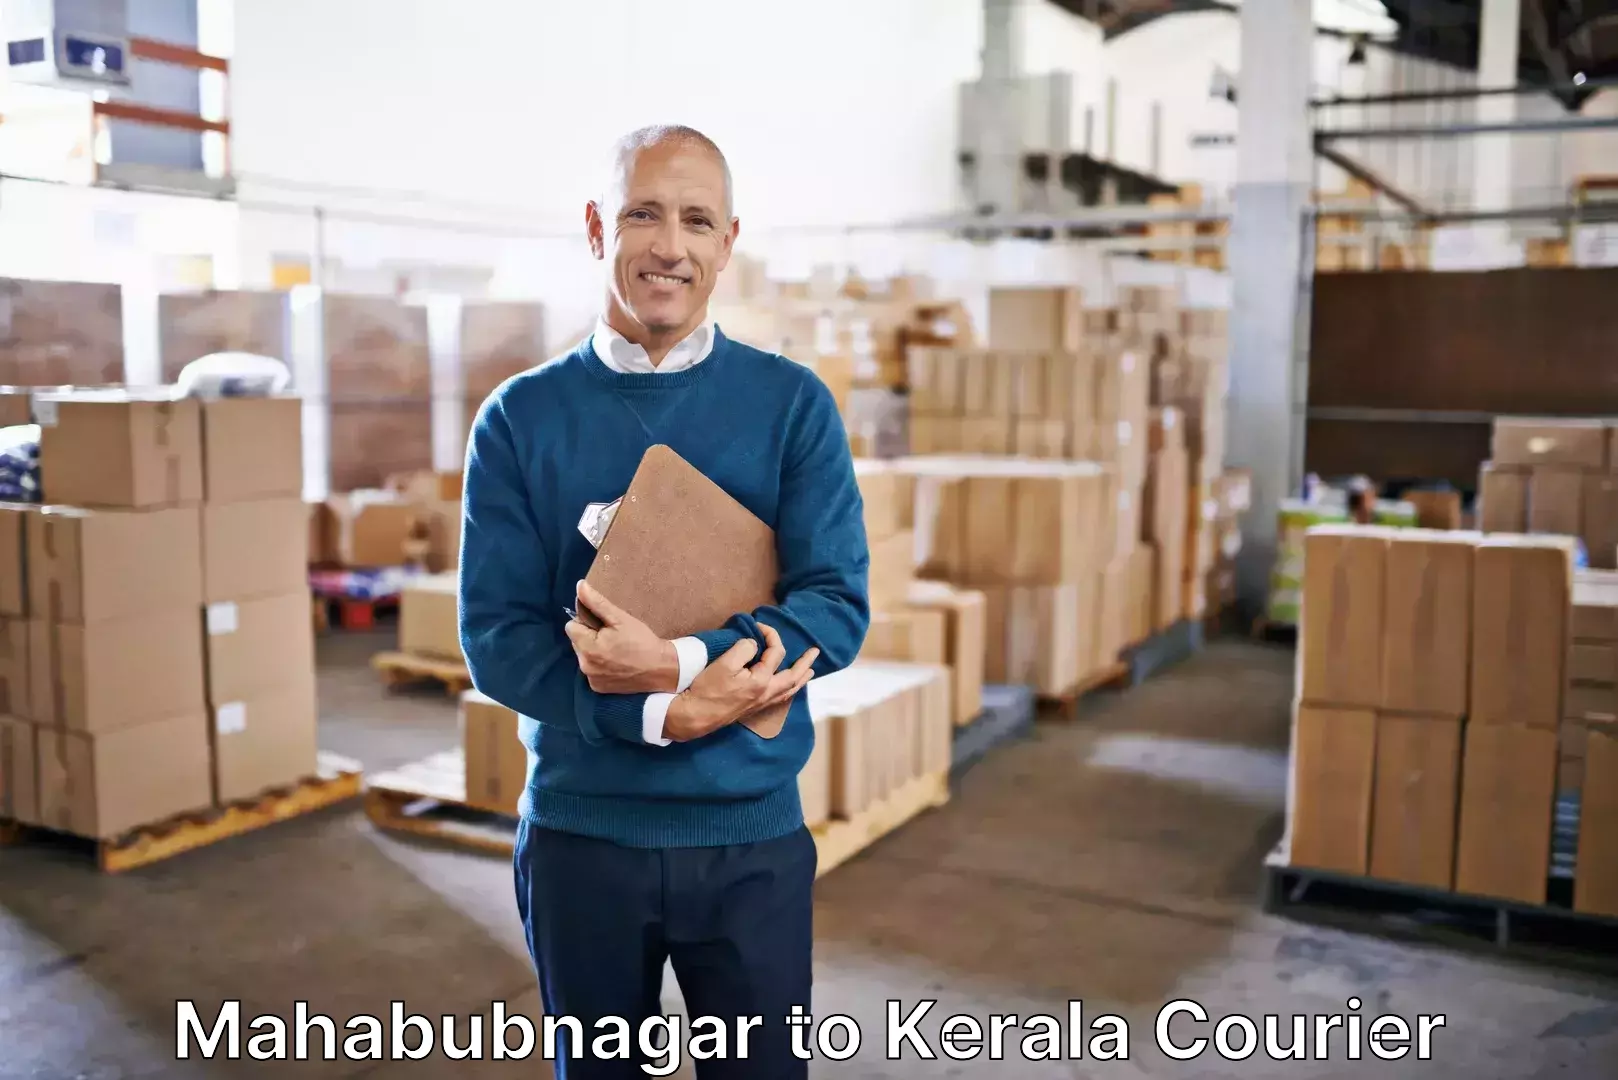 Baggage shipping service Mahabubnagar to Cochin